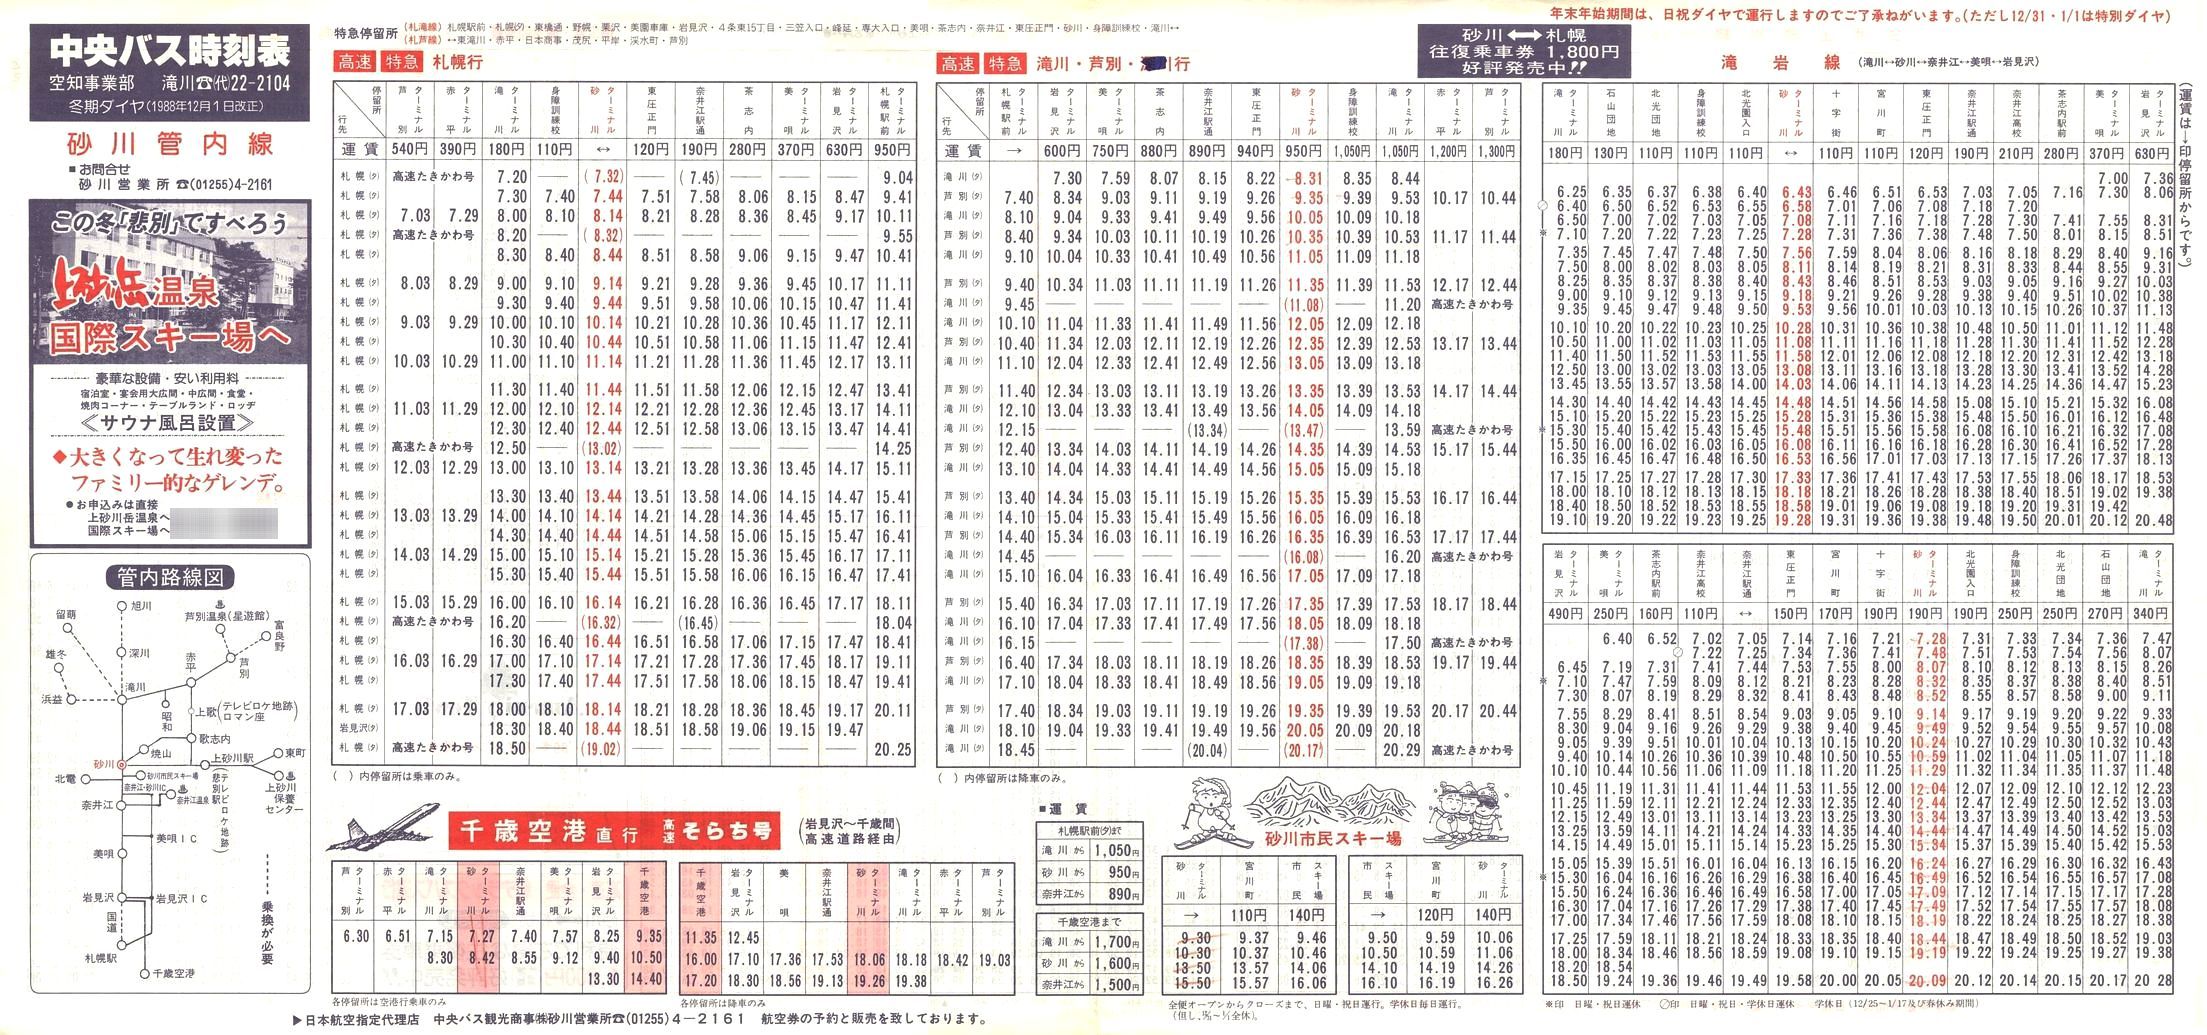 1988-12-01改正_北海道中央バス(空知)_砂川管内線時刻表表面